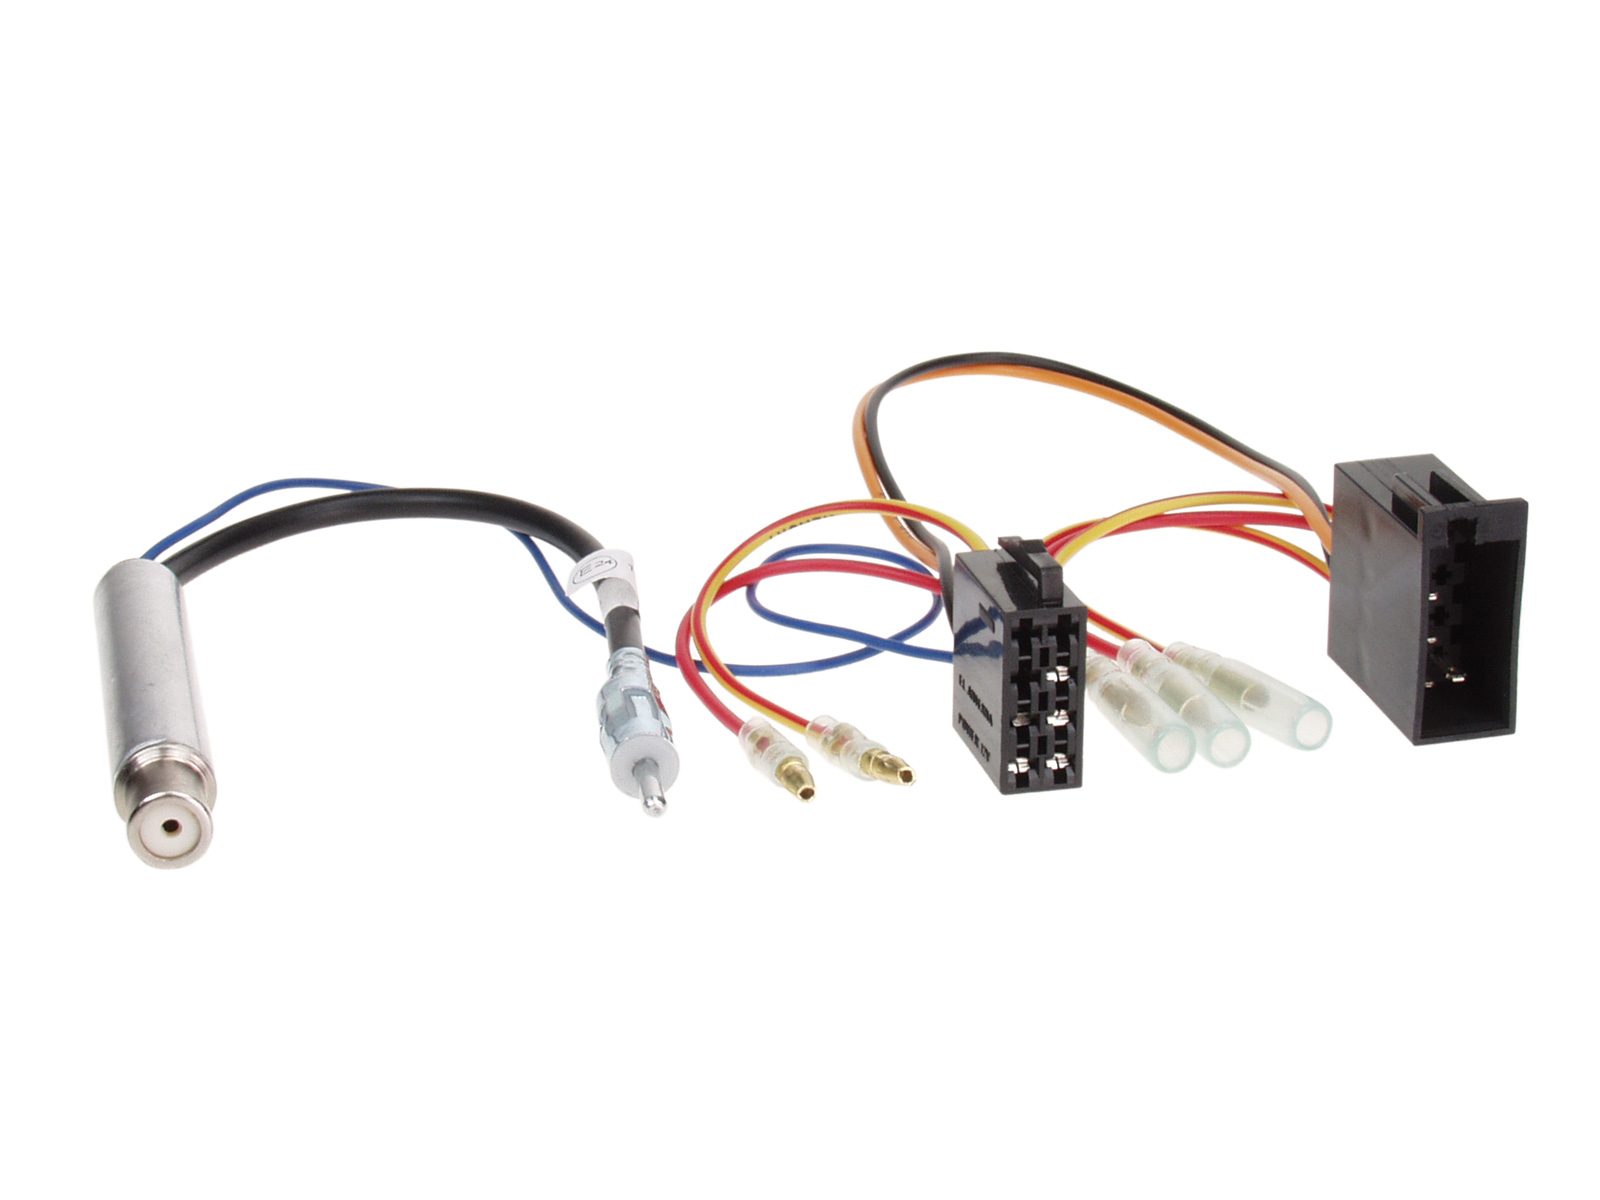 Antennenadapter kompatibel mit Skoda Phantomspeisung u. ISO Stromanschluß ab Bj. 1998 adaptiert von ISO (f) auf DIN (m)